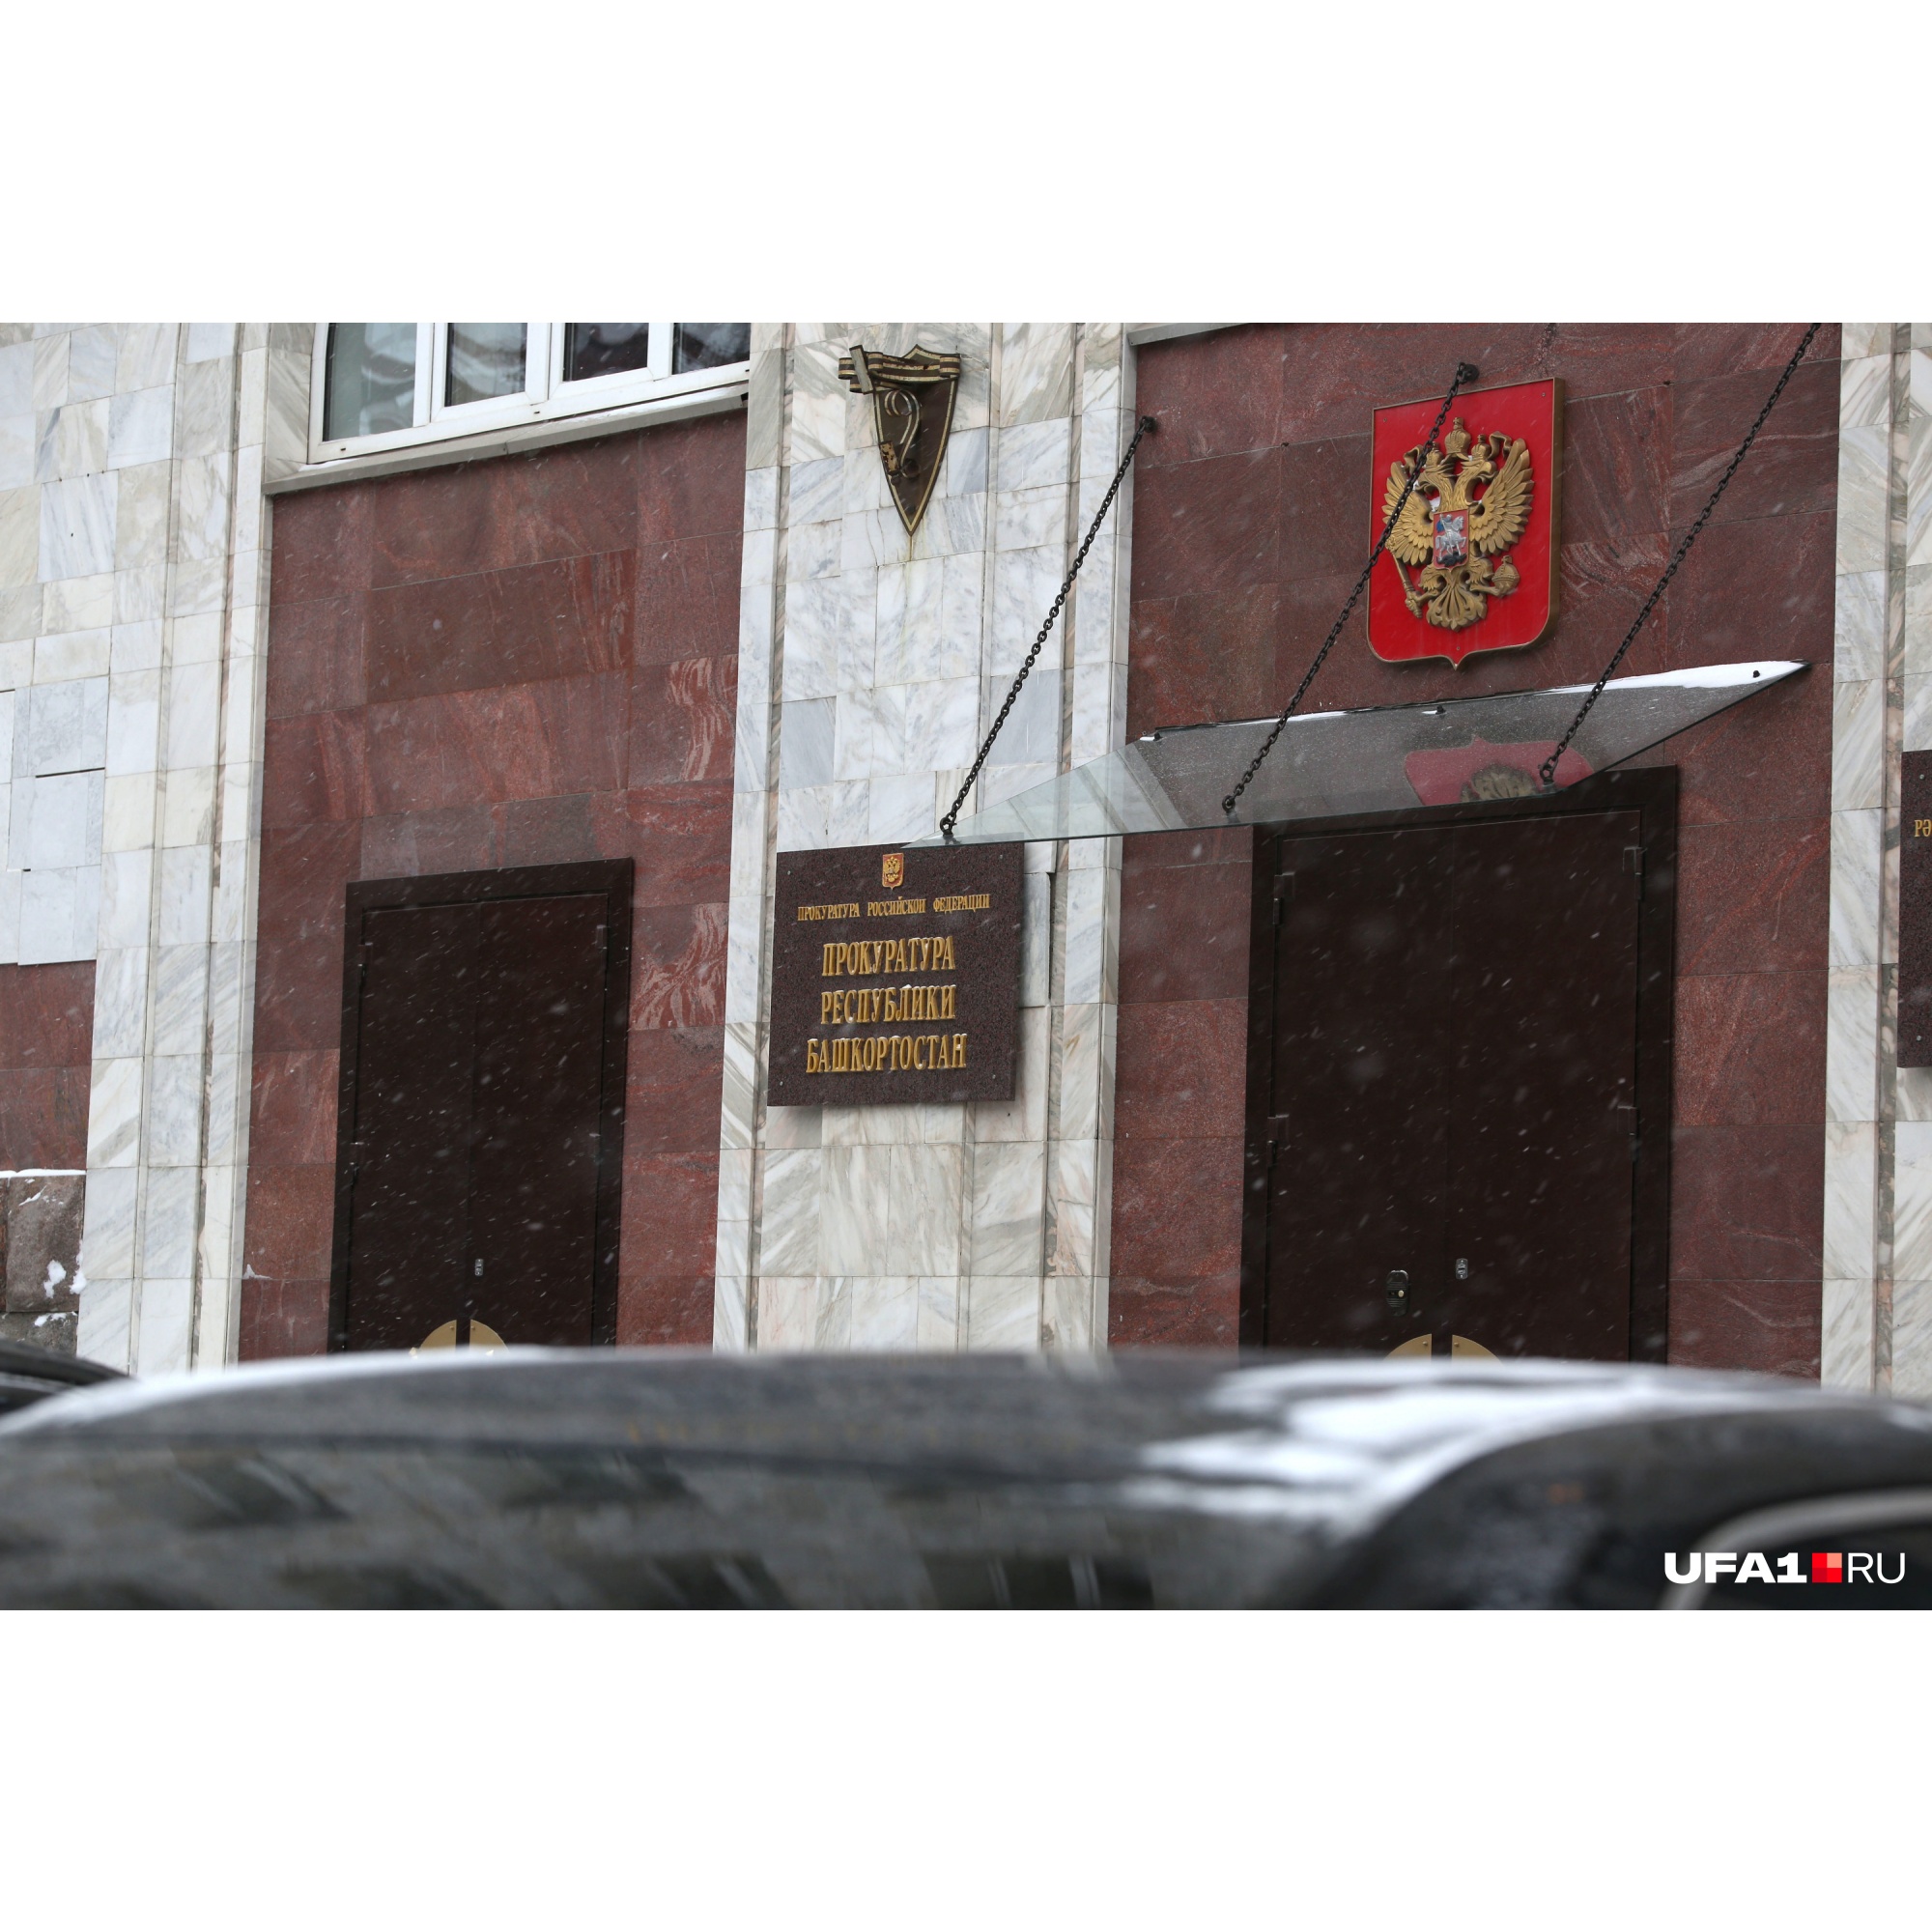 Экс-сотрудник собственной безопасности МВД Башкирии лишился имущества почти на 50 миллионов рублей